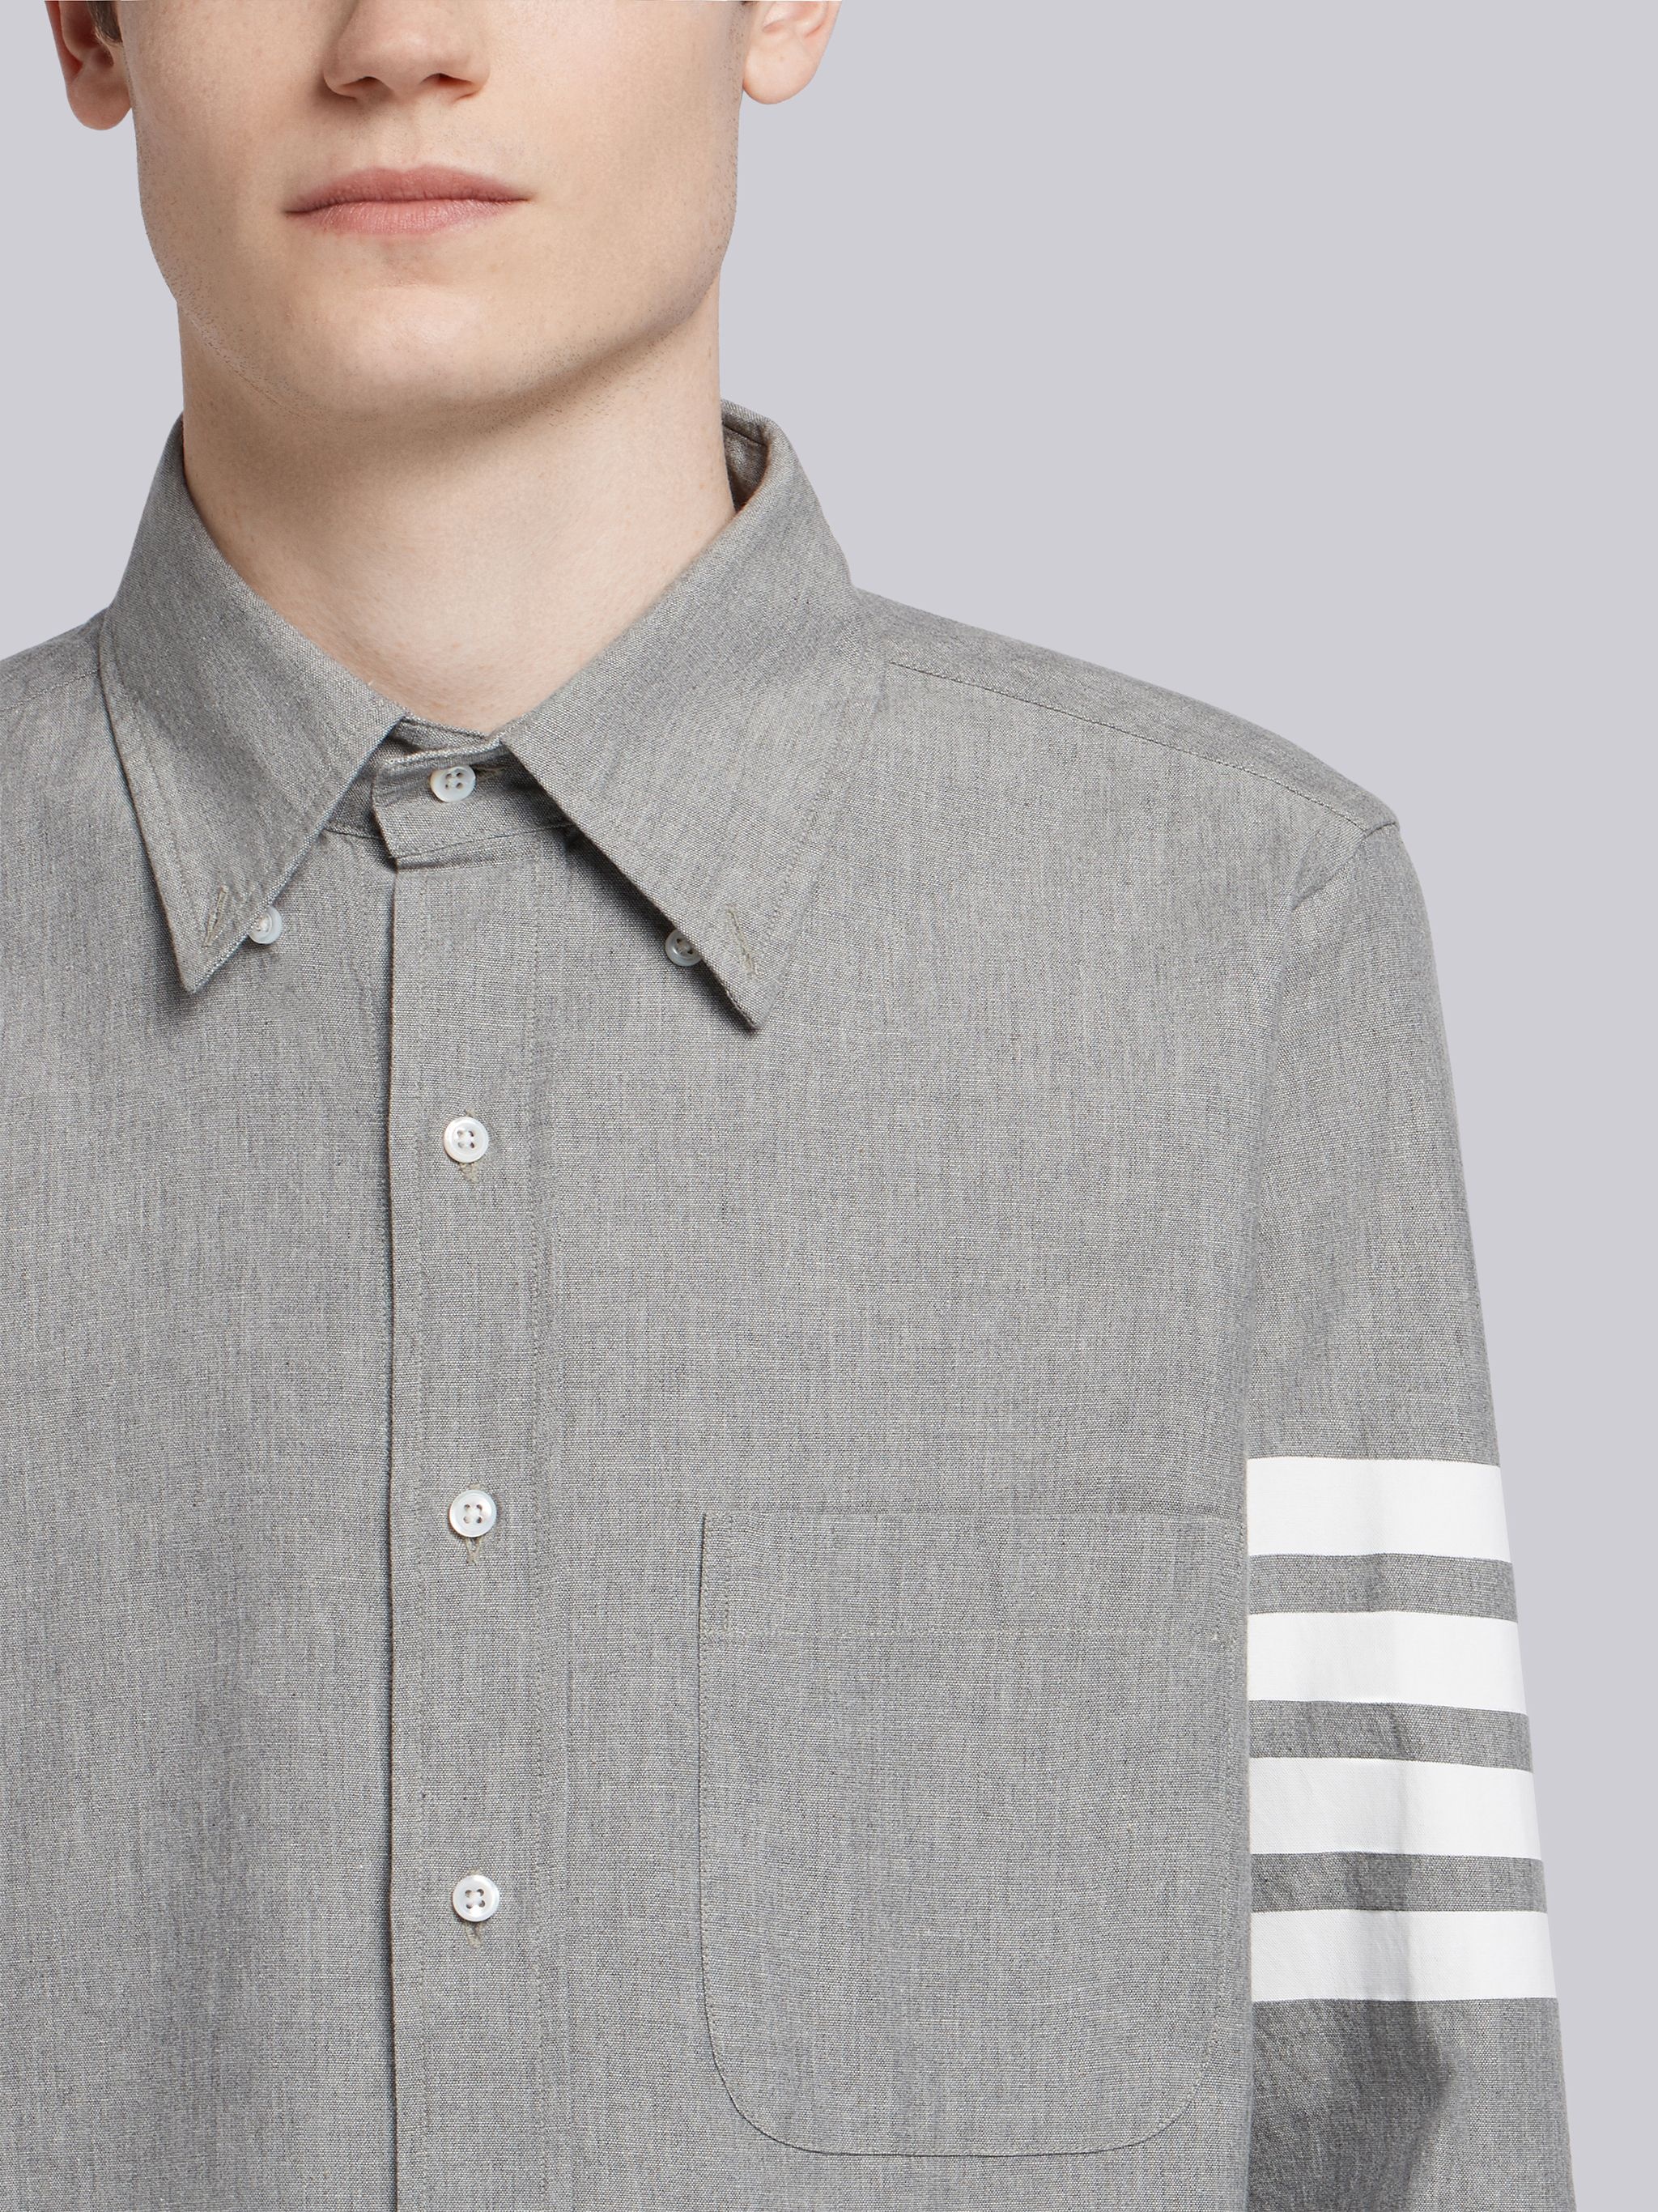 Medium Grey Chambray Printed 4-bar Nametag Straight Fit Shirt - 6